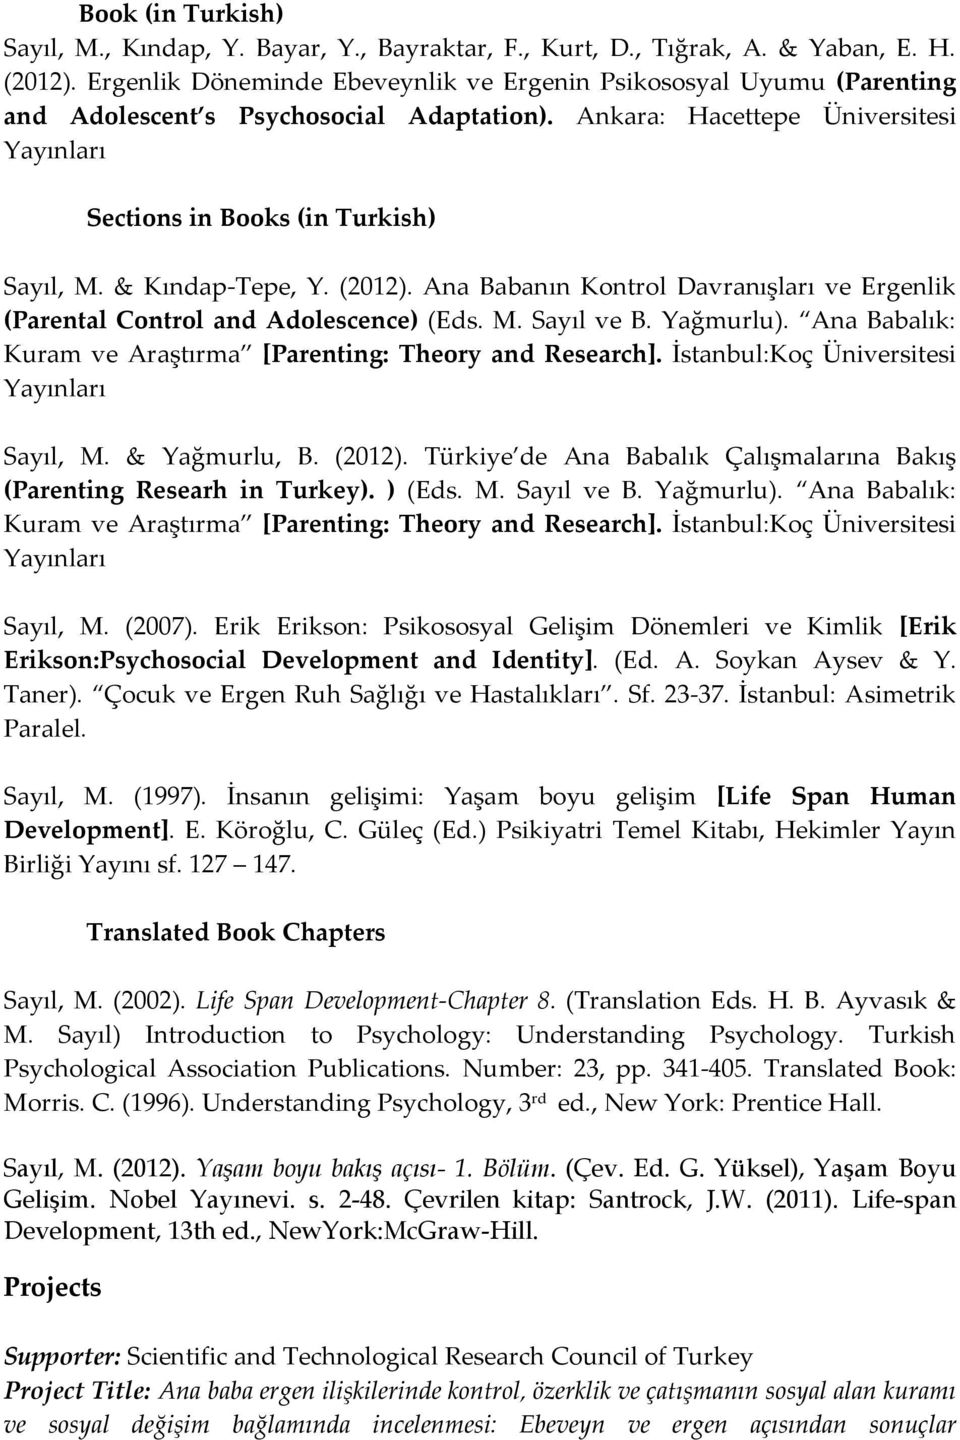 & Kındap-Tepe, Y. (2012). Ana Babanın Kontrol Davranışları ve Ergenlik (Parental Control and Adolescence) (Eds. M. Sayıl ve B. Yağmurlu).